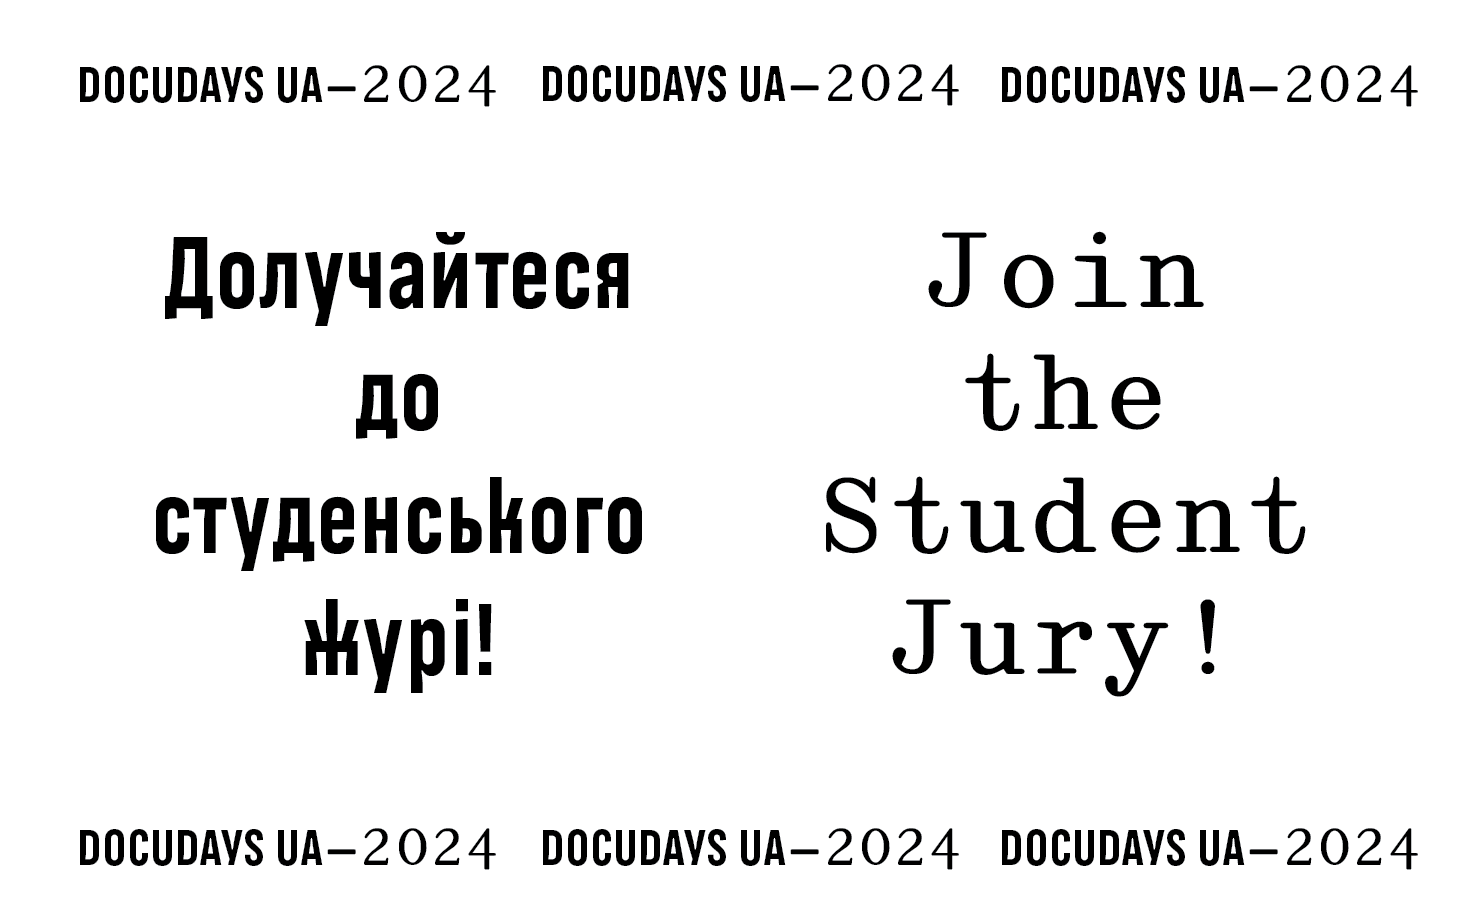 Міжнародний кінофестиваль DOCUDAYS UA-2024 оголосив відбір кандидатів до складу студентськ...